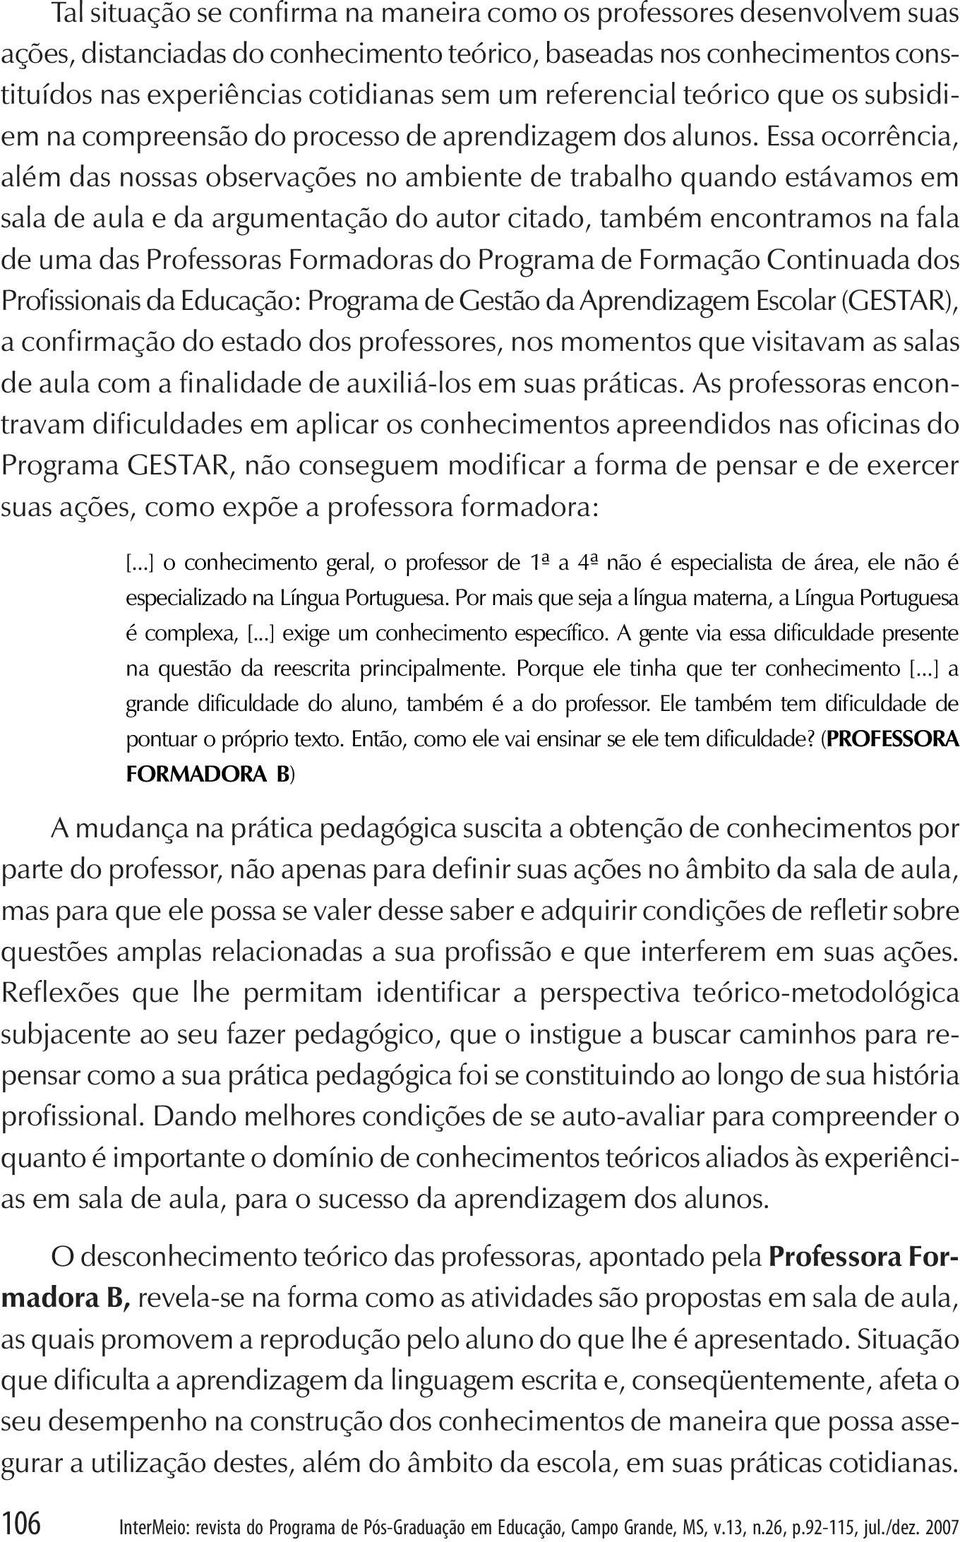 Educação, Campo Grande, MS, v.